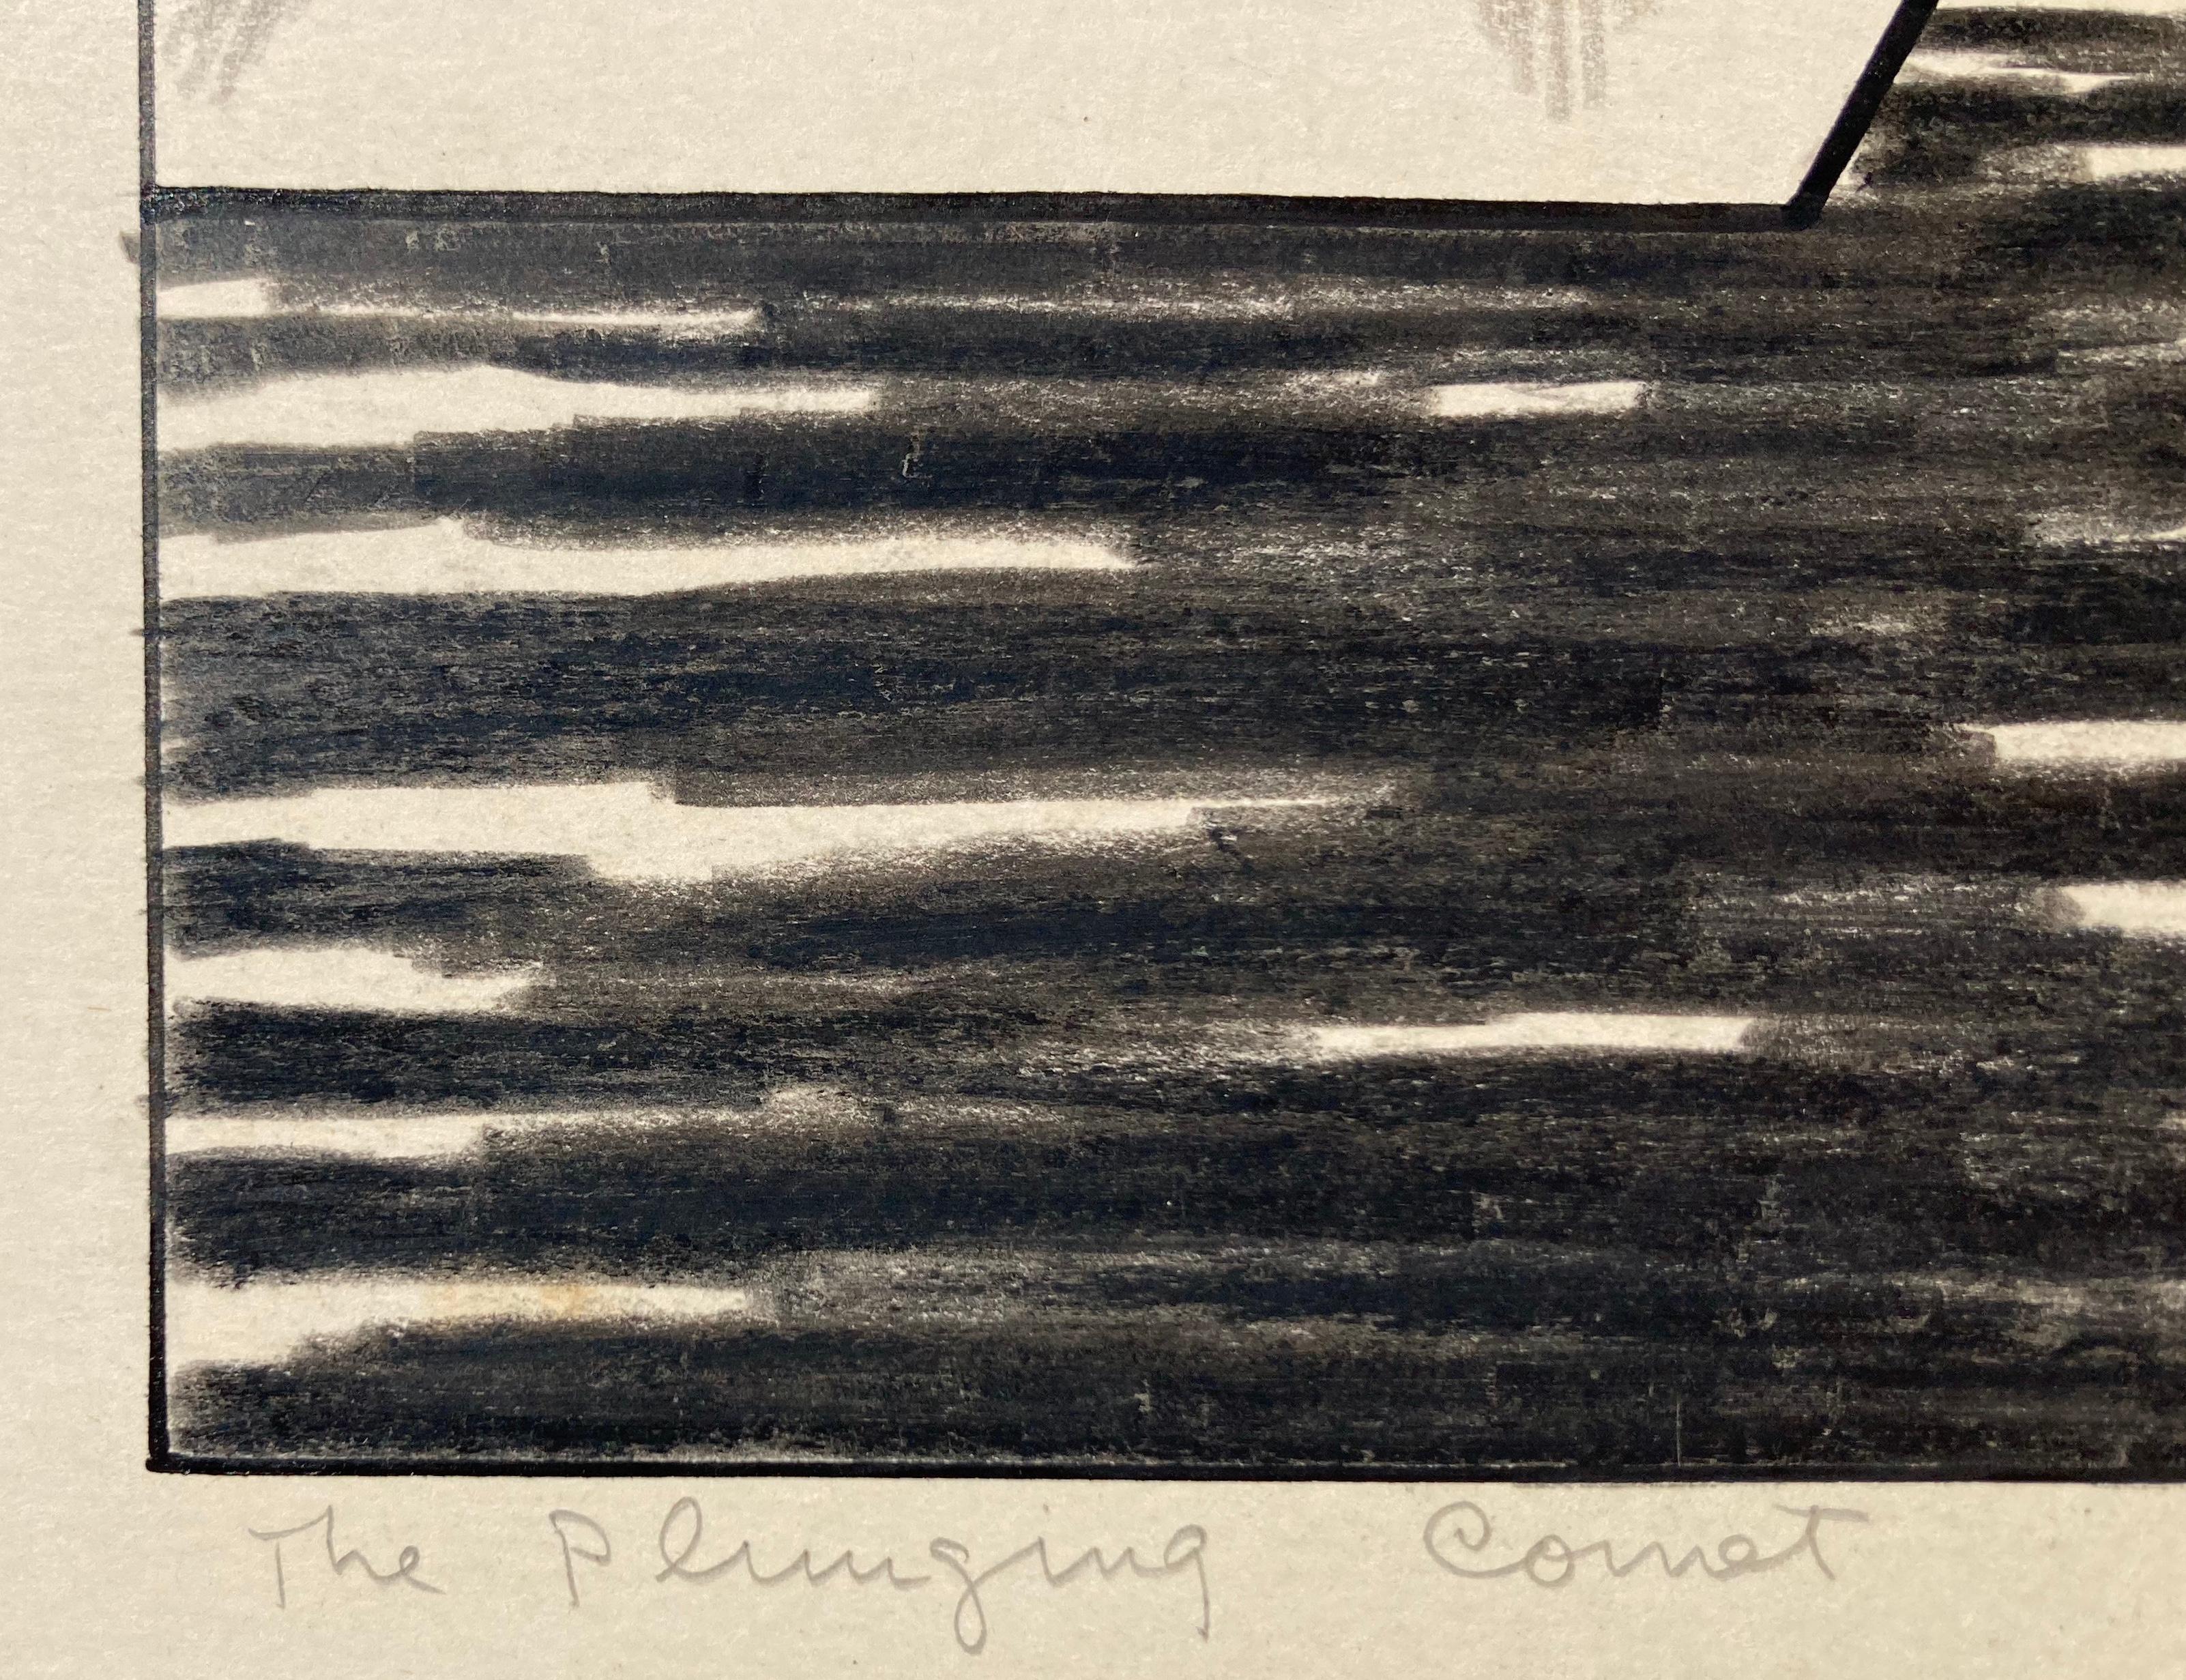 PLUNGING COMET (Surrealismus), Art, von Edward Hagedorn